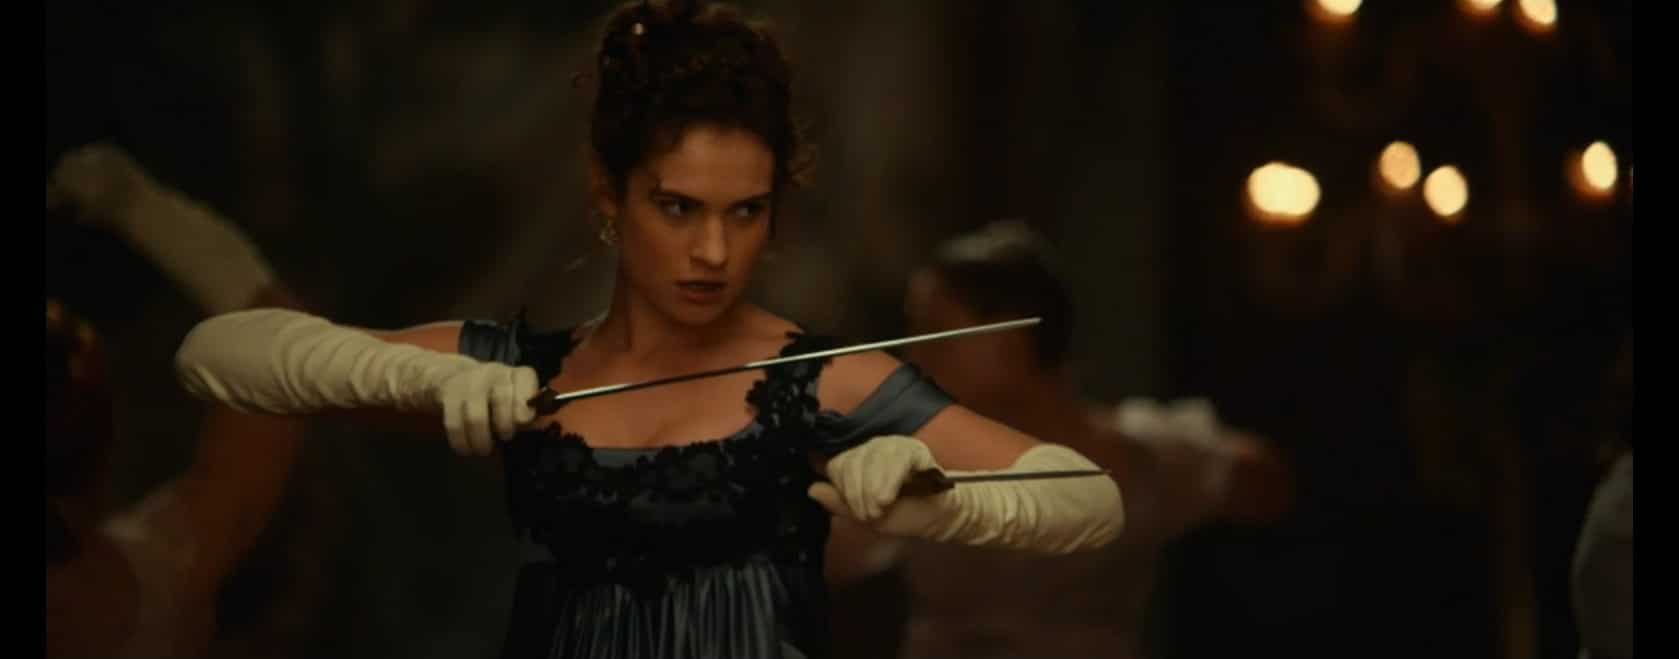 Prête à affronter les zombies, Elizabeth Bennet tient une épée dans chacune de ses mains.